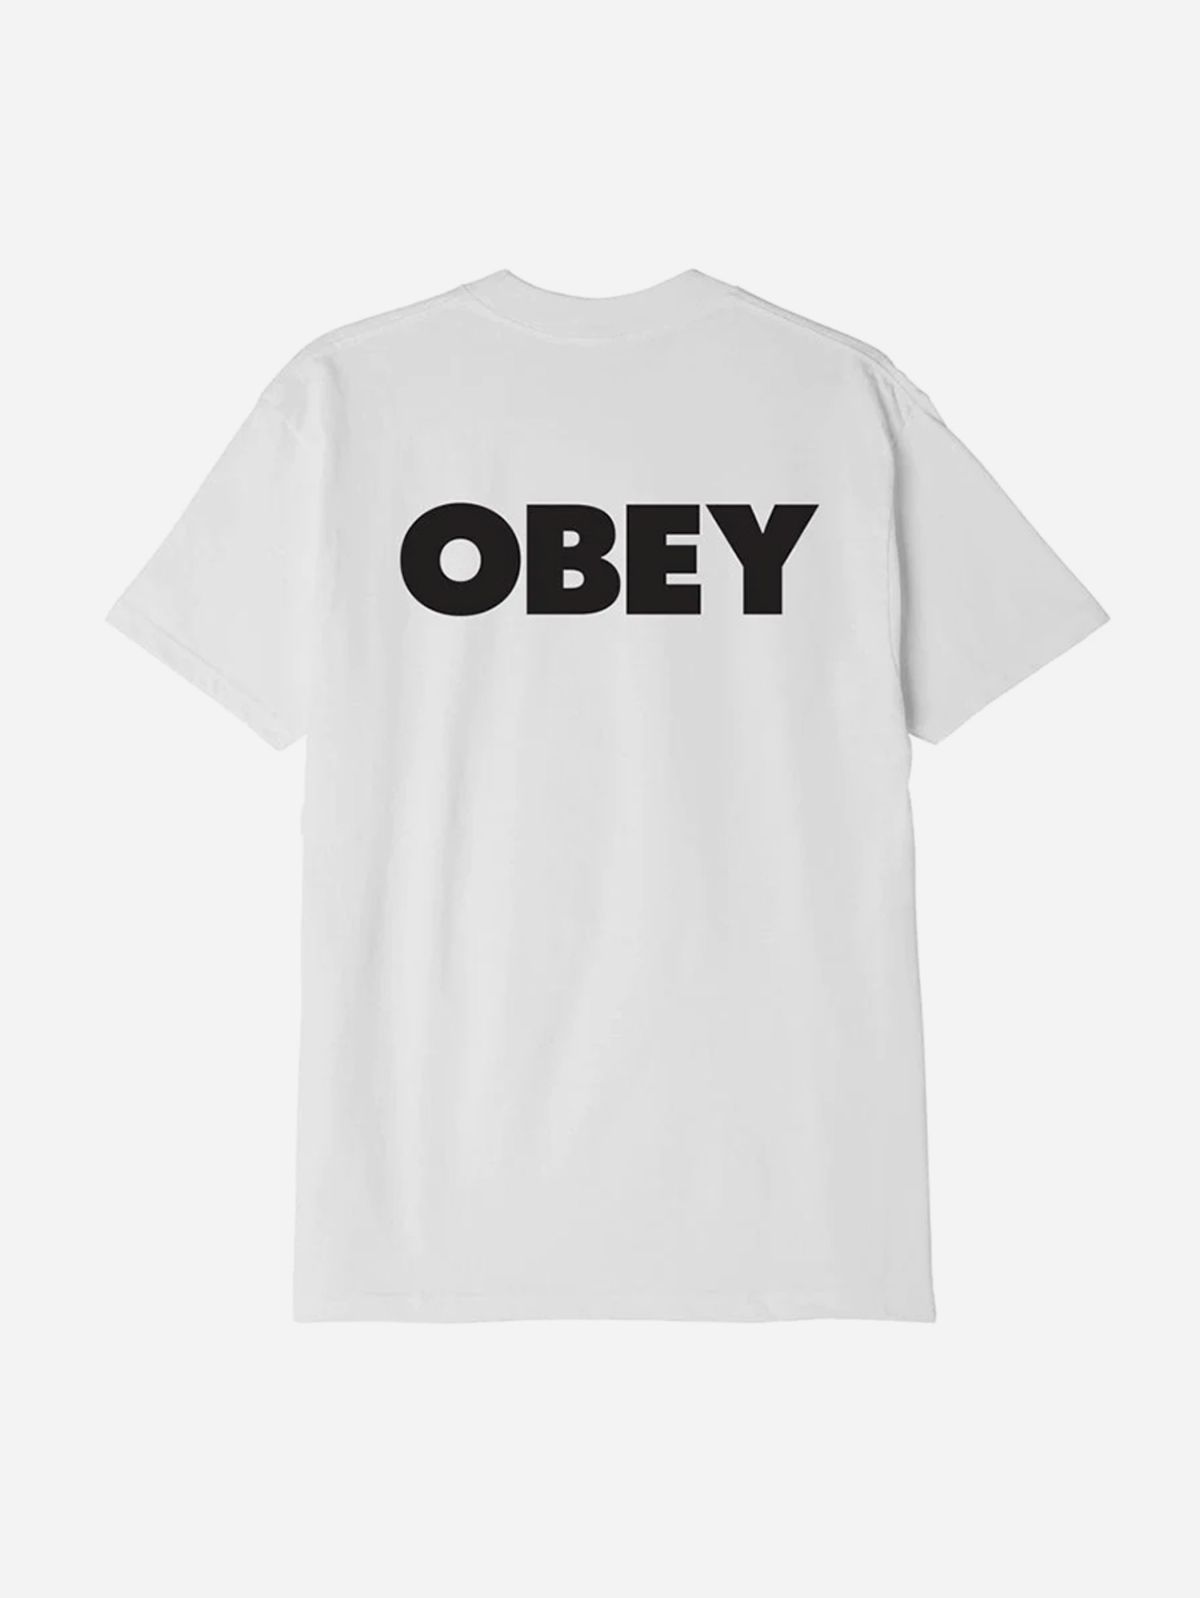  טי שירט עם הדפס לוגו / גברים של OBEY